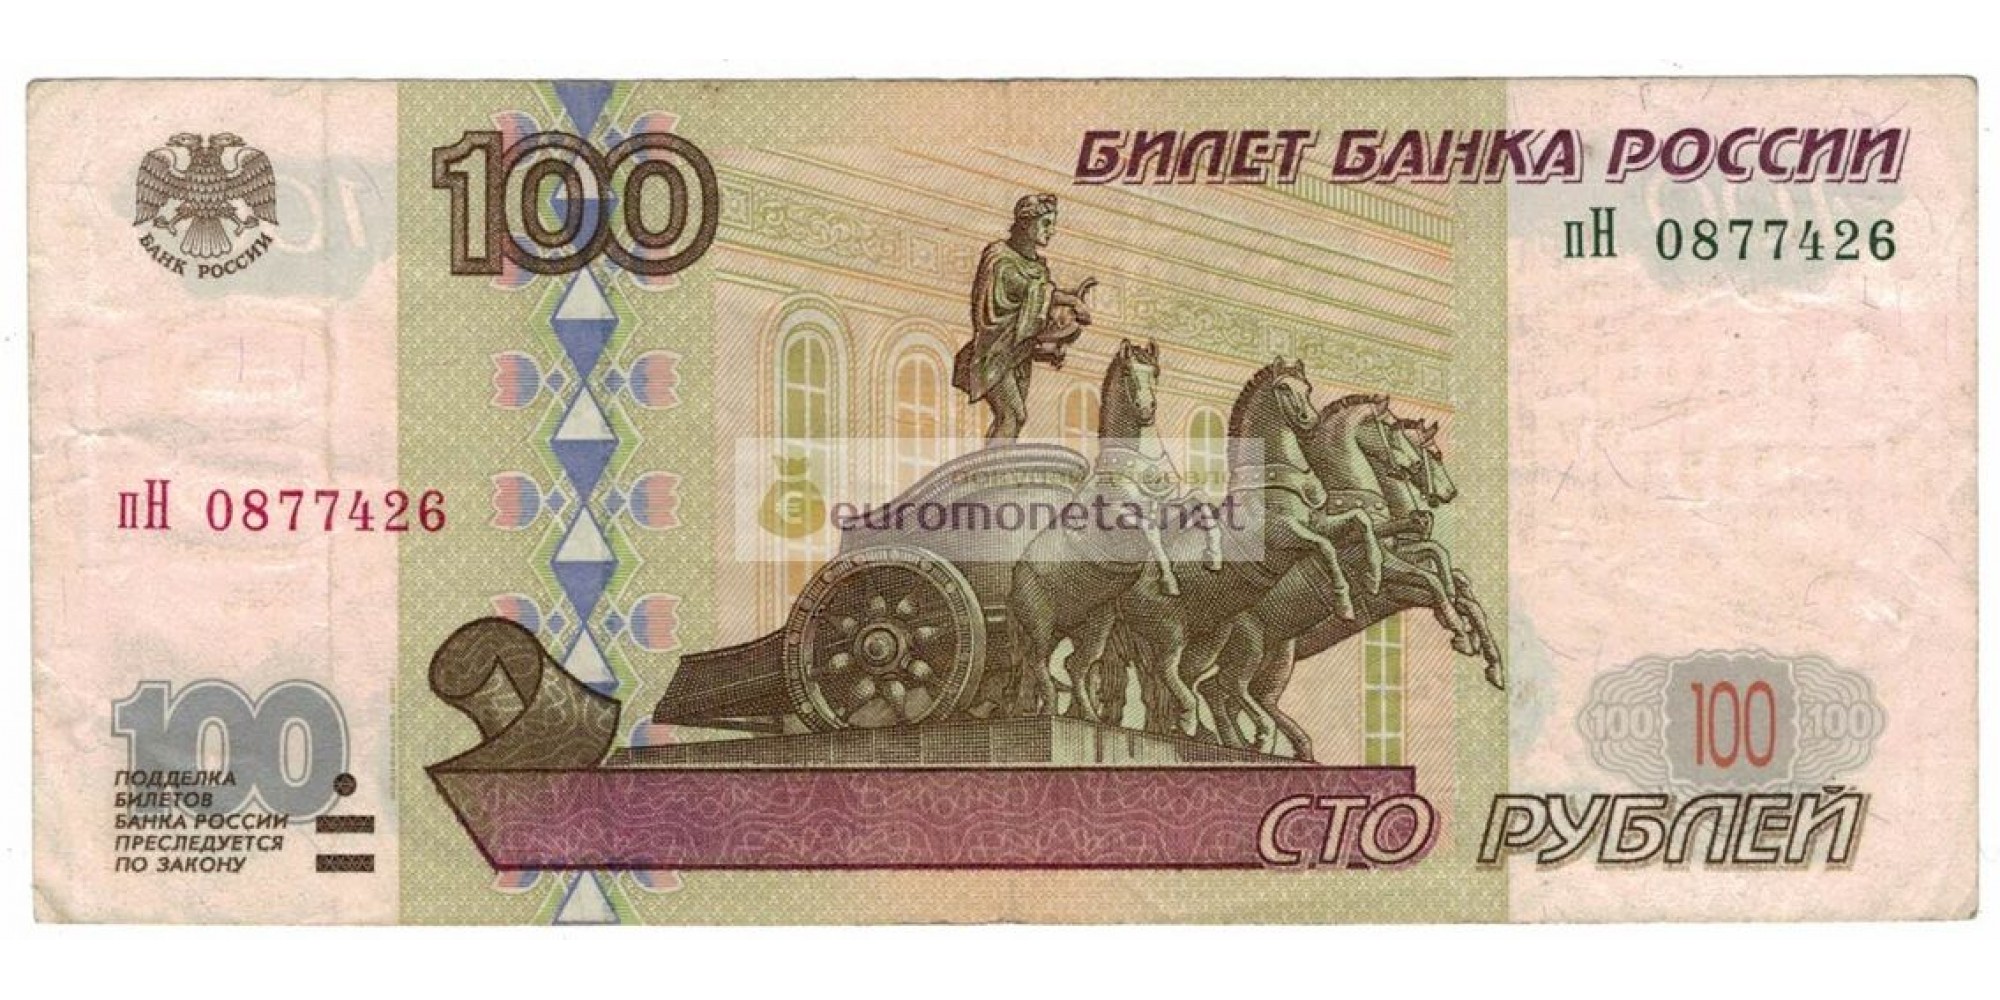 Россия 100 рублей 1997 год модификация 2001 год серия пН 0877426